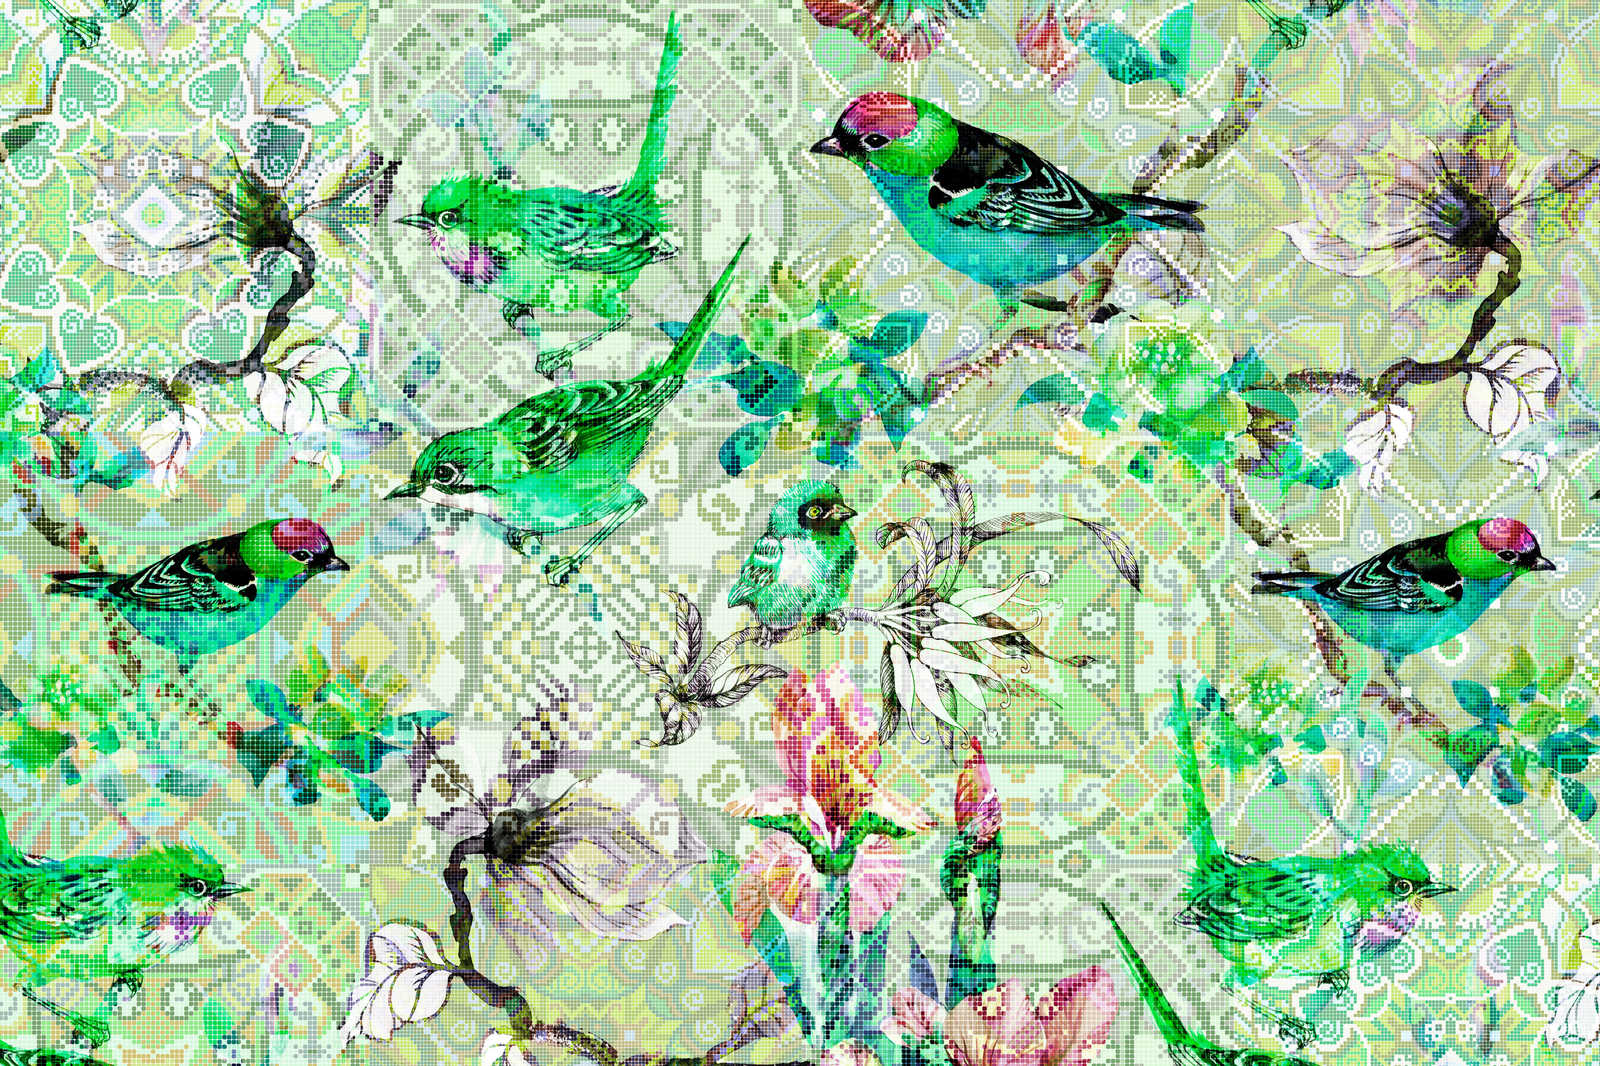             Oiseau toile vert avec motif mosaïque - 0,90 m x 0,60 m
        